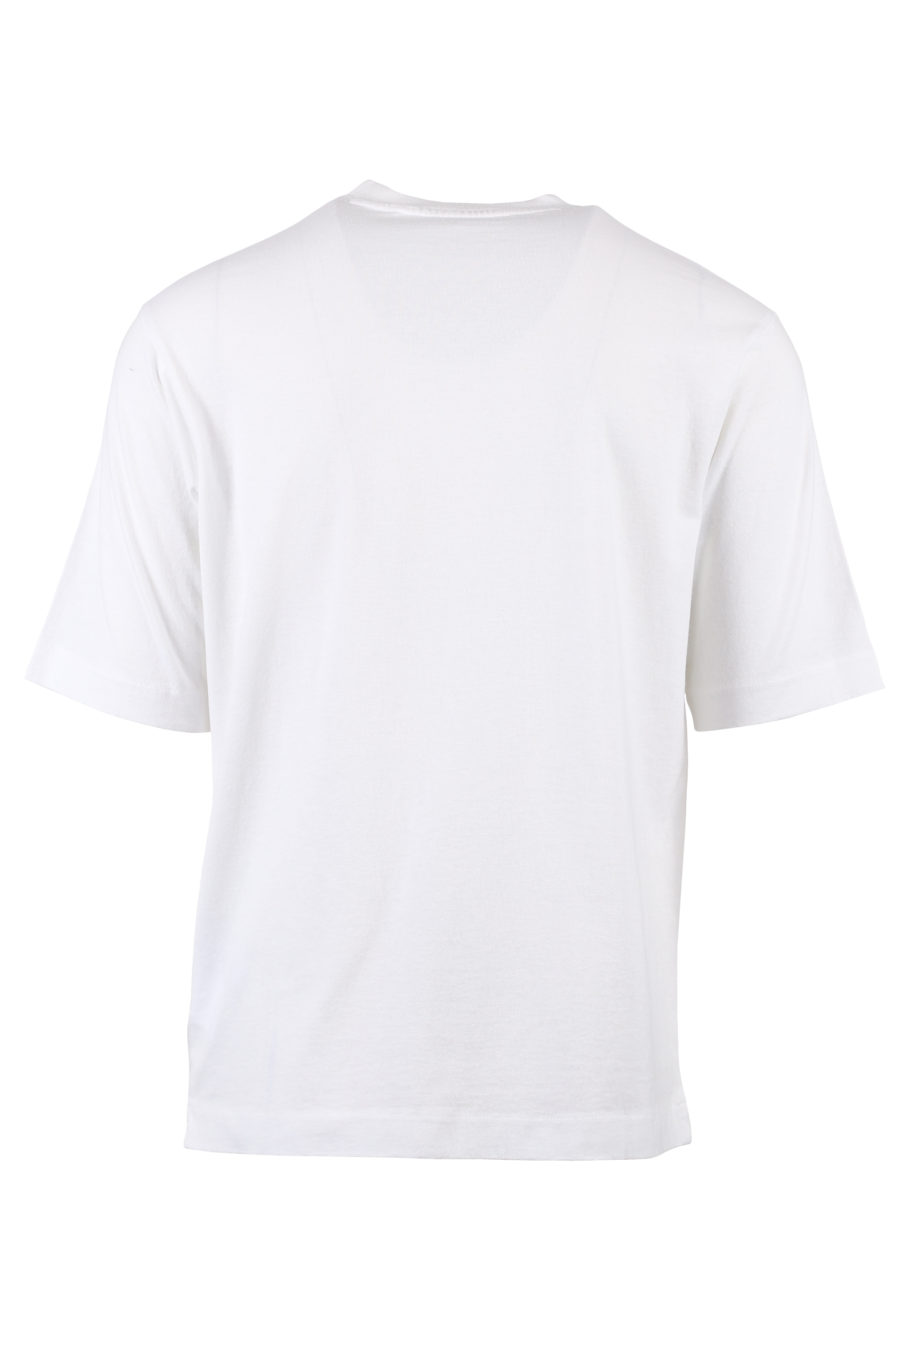 Weißes T-Shirt mit schwarzem und weißem Logo - IMG 1355